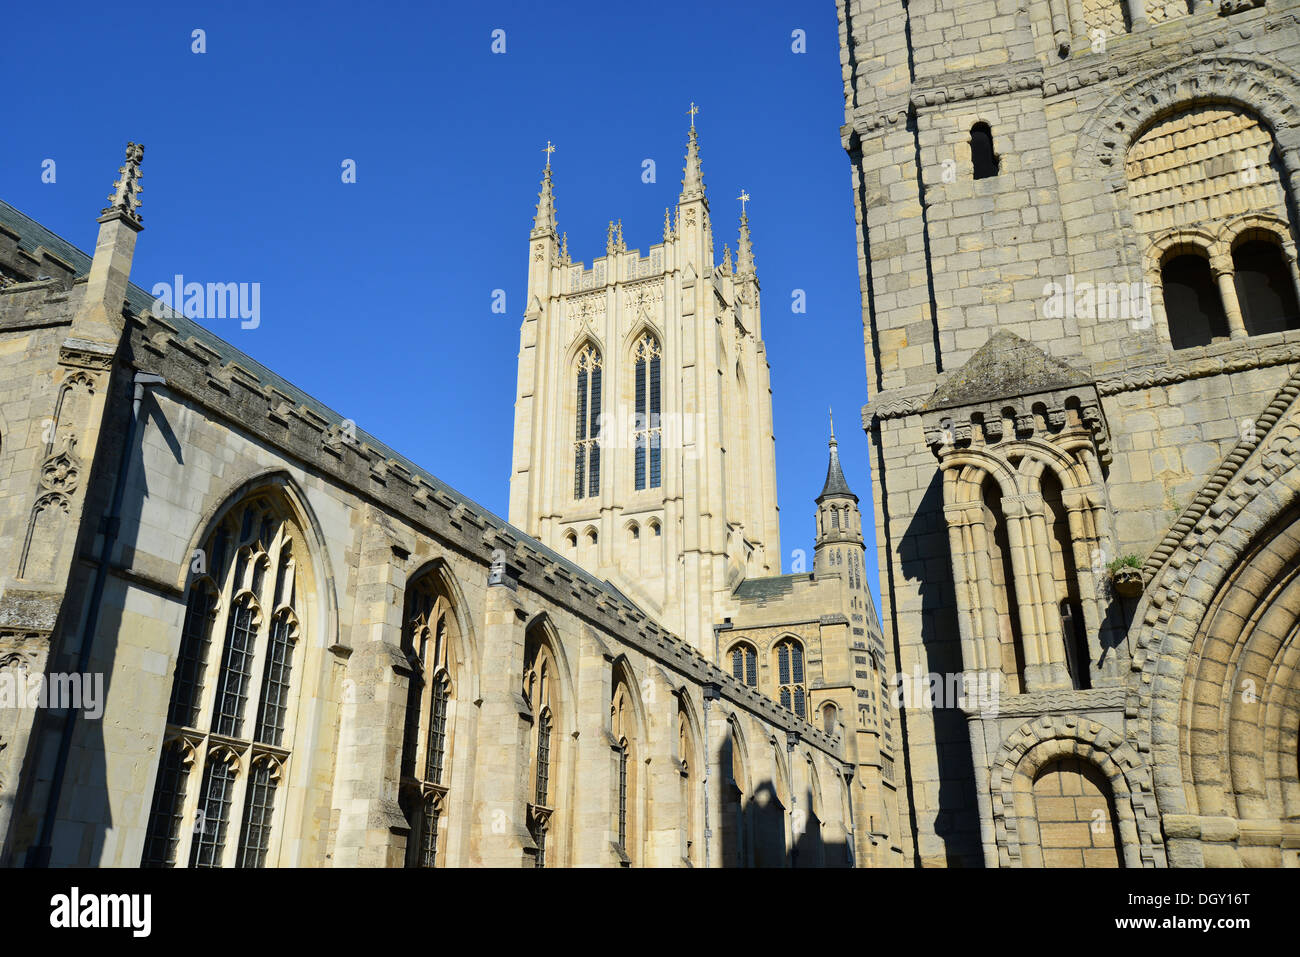 St Edmundsbury Cathedral, Bury St Edmunds, Suffolk, England, United Kingdom Stock Photo